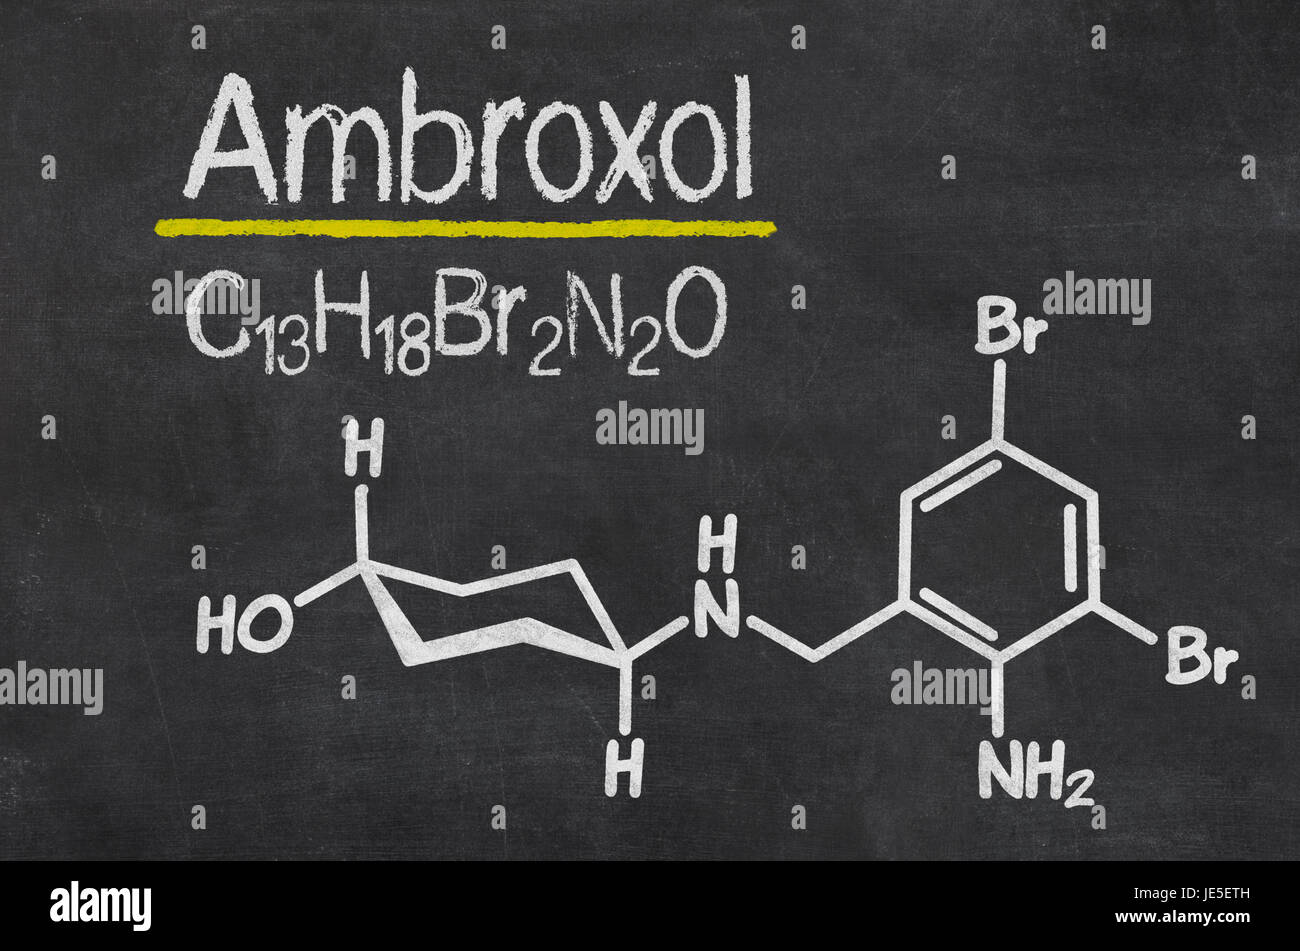 Schiefertafel mit der chemischen Formel von ambroxolo Foto Stock